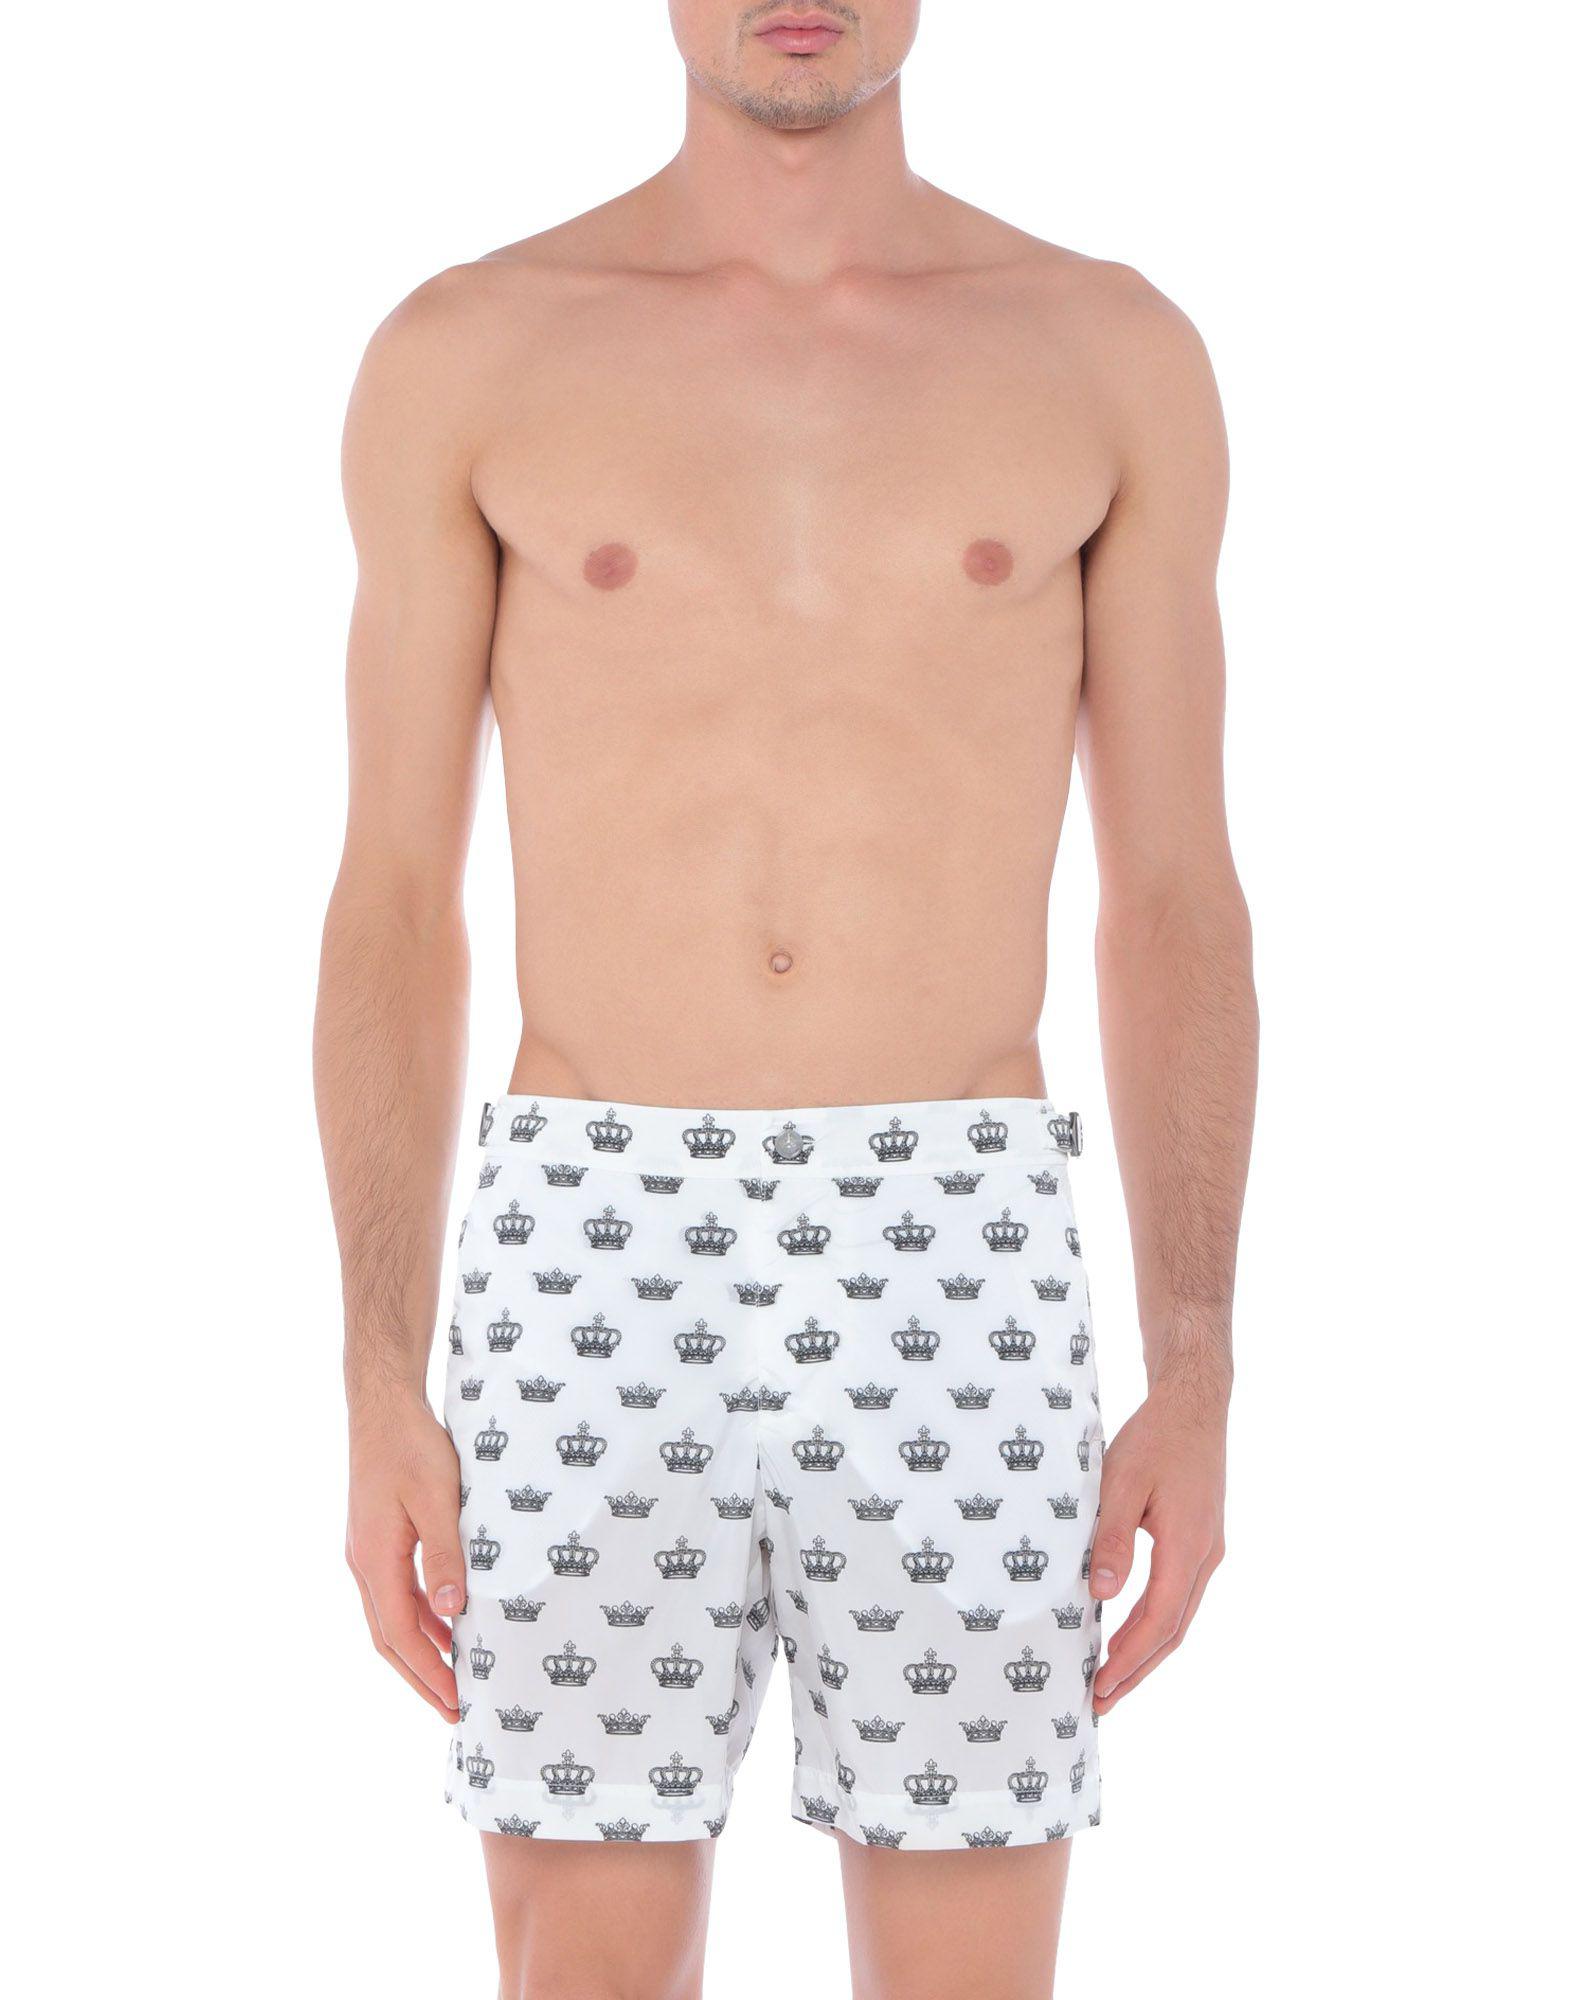 Dolce & Gabbana Synthetic Swim Trunks in White for Men - Lyst